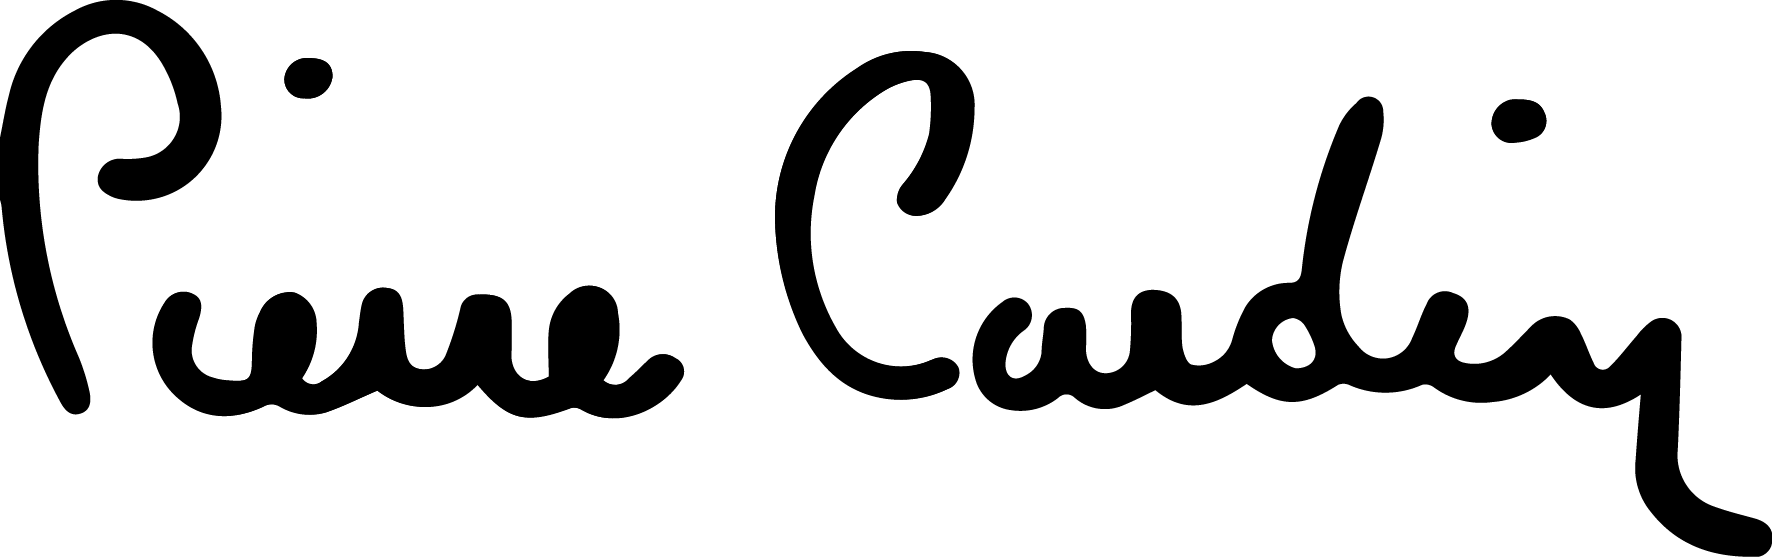 Pierre Cardin – Logos Downl